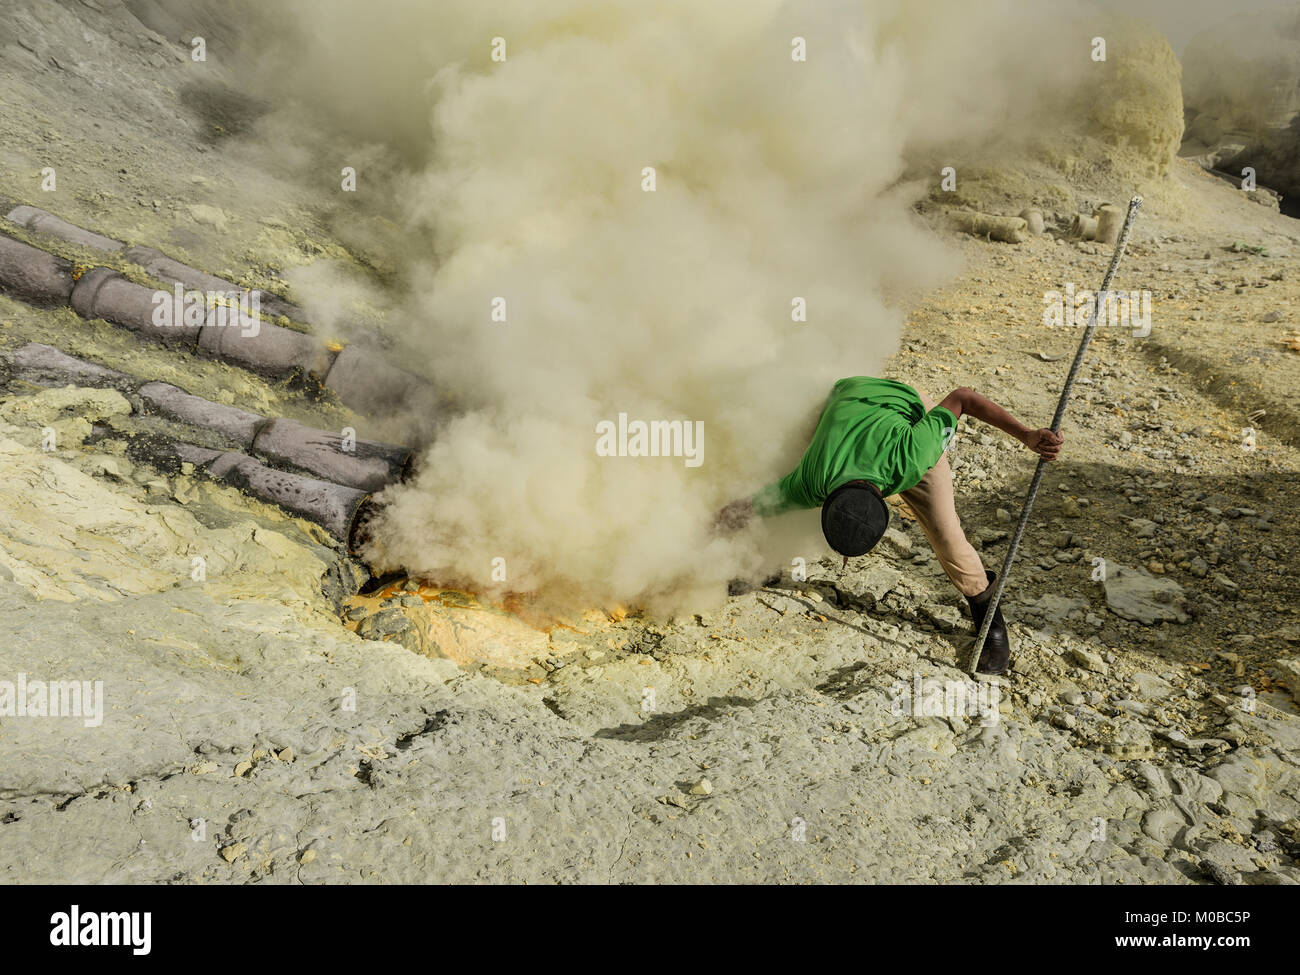 Schwefel miner Arbeiten in extrem rauer Umgebung Schwefel aus Vulkan Ijen zu extrahieren, Indonesien Stockfoto